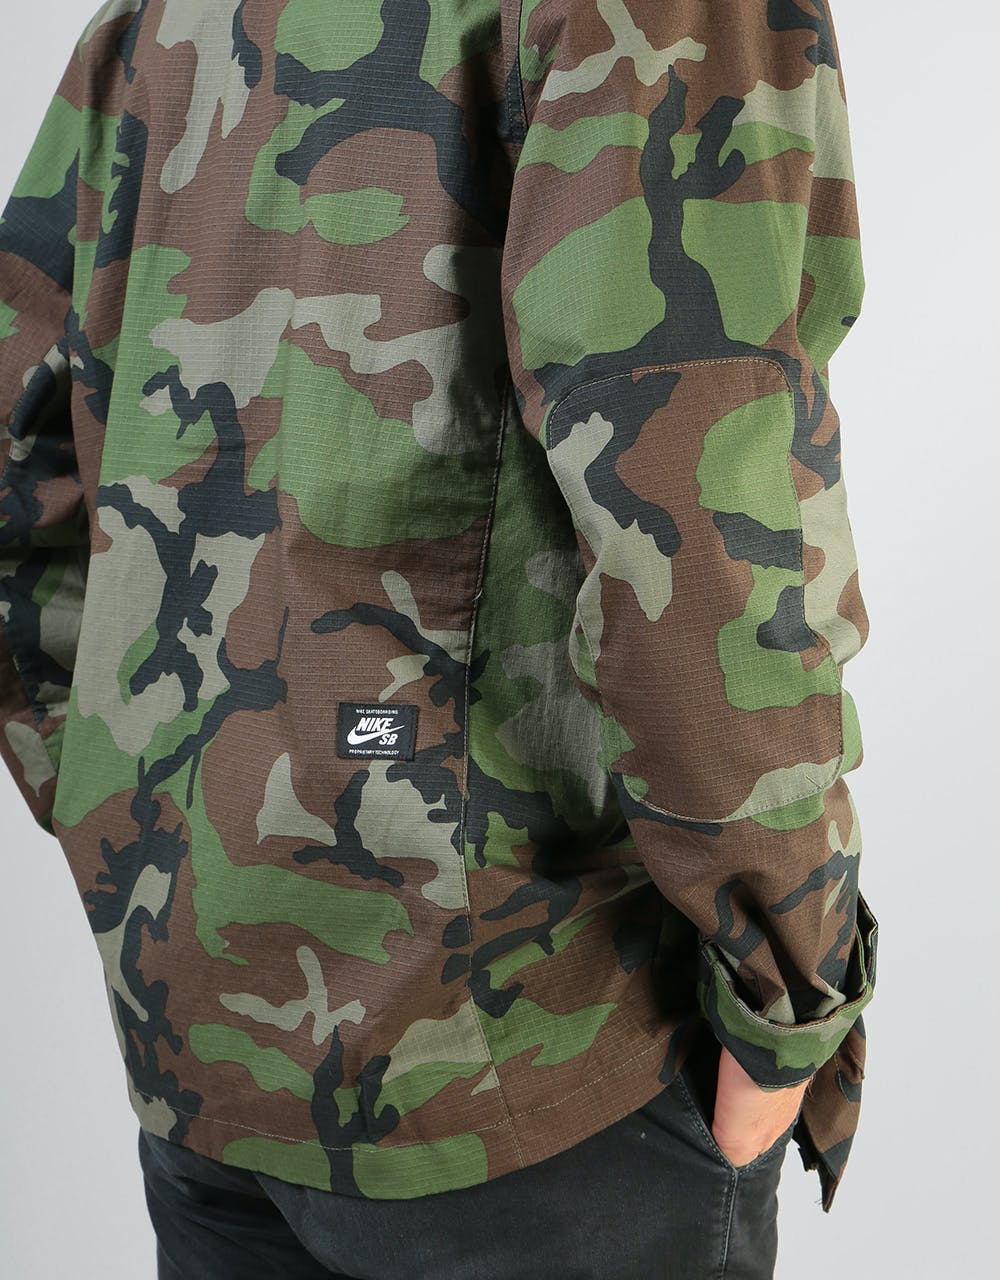 Nike SB Camo Chore Jacket - Medium Olive/Black